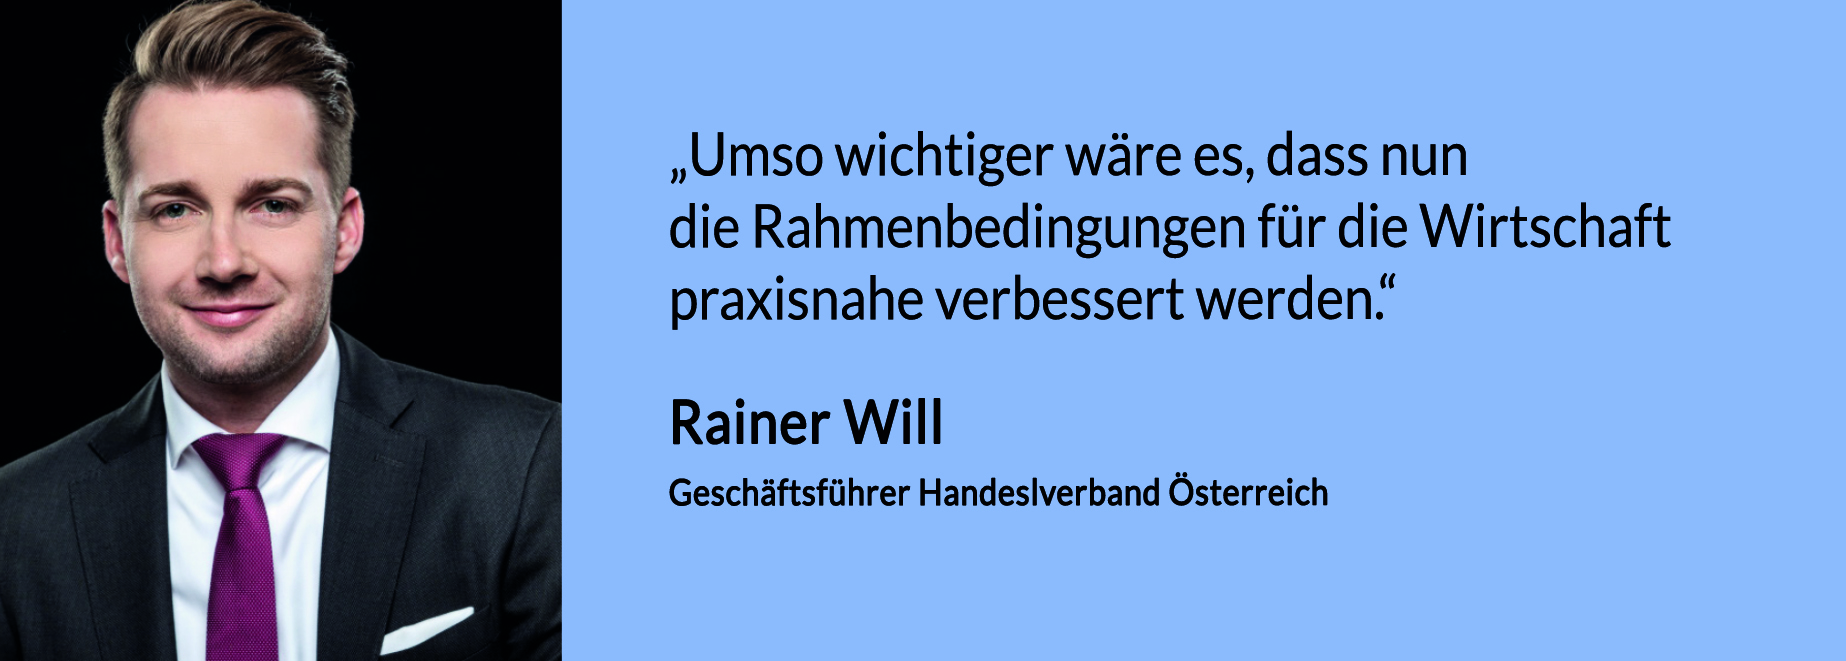 Rainer_Will_Geschäftsführer_Handelsverband_Österreich_Zitat